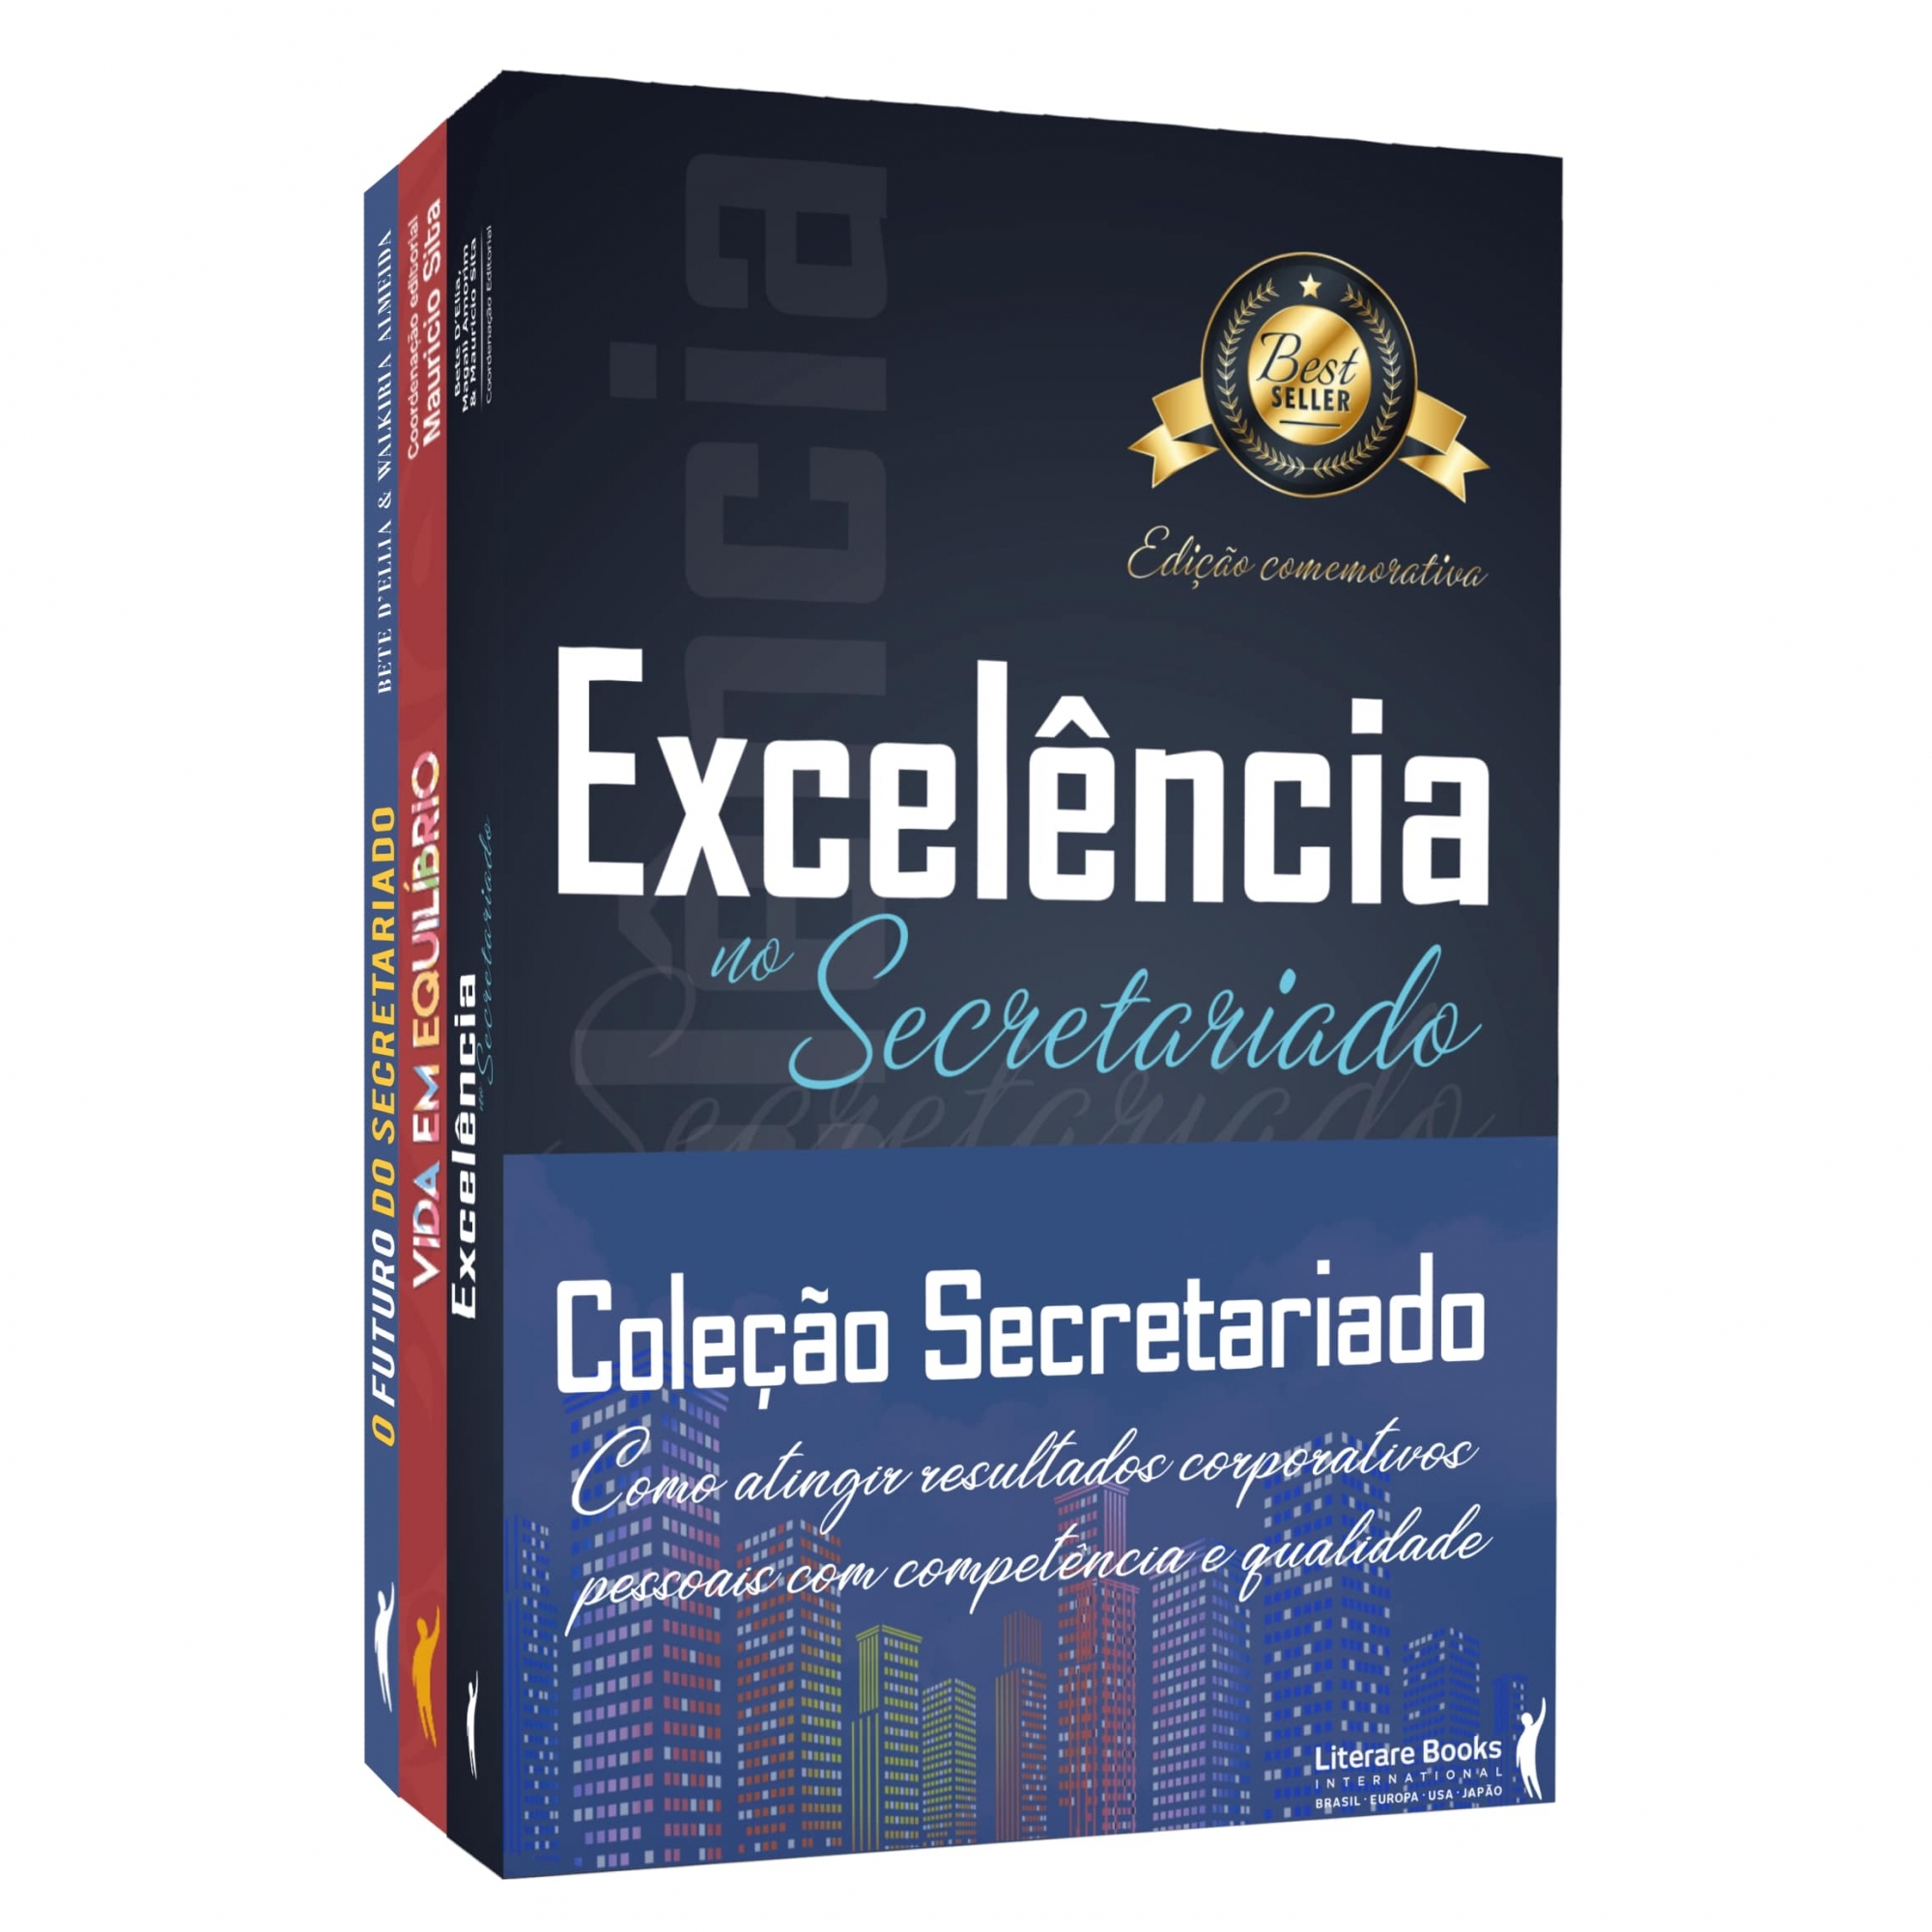 Coleção Secretariado: Como atingir resultados corporativos e pessoais com competência e qualidade